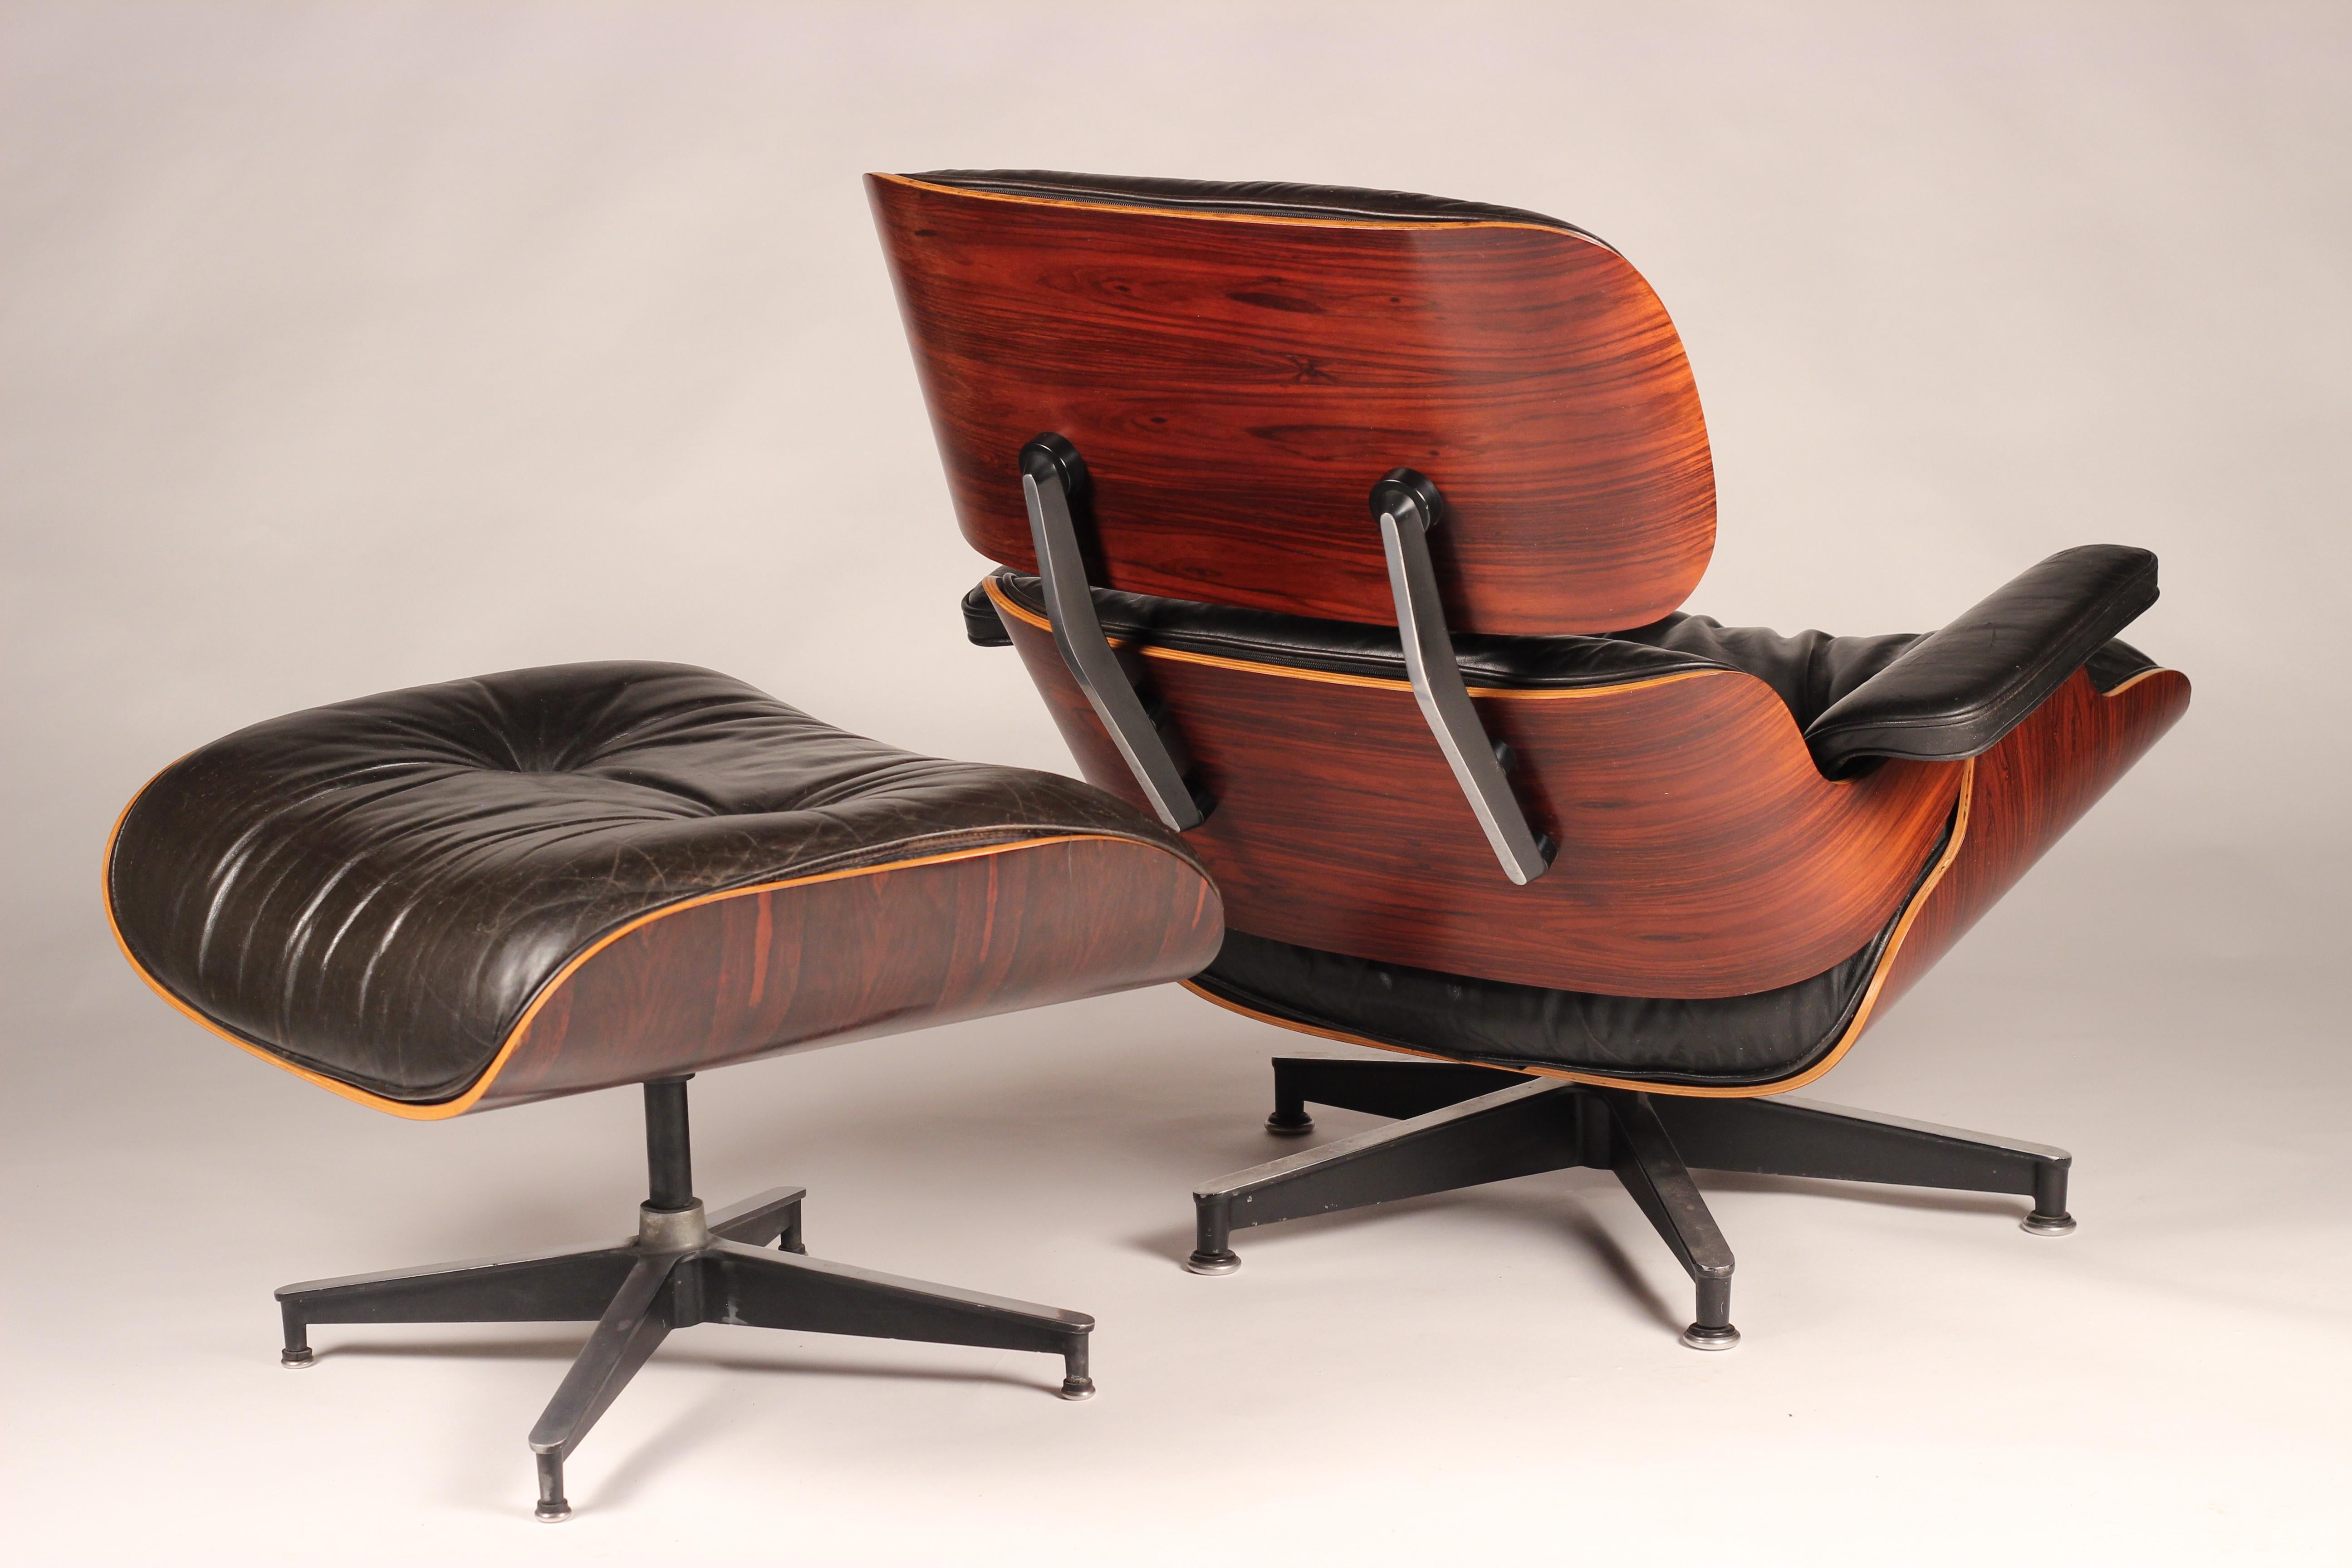 Fin du 20e siècle Charles and Ray Eames fauteuil de salon en bois de rose 670 et pouf 671